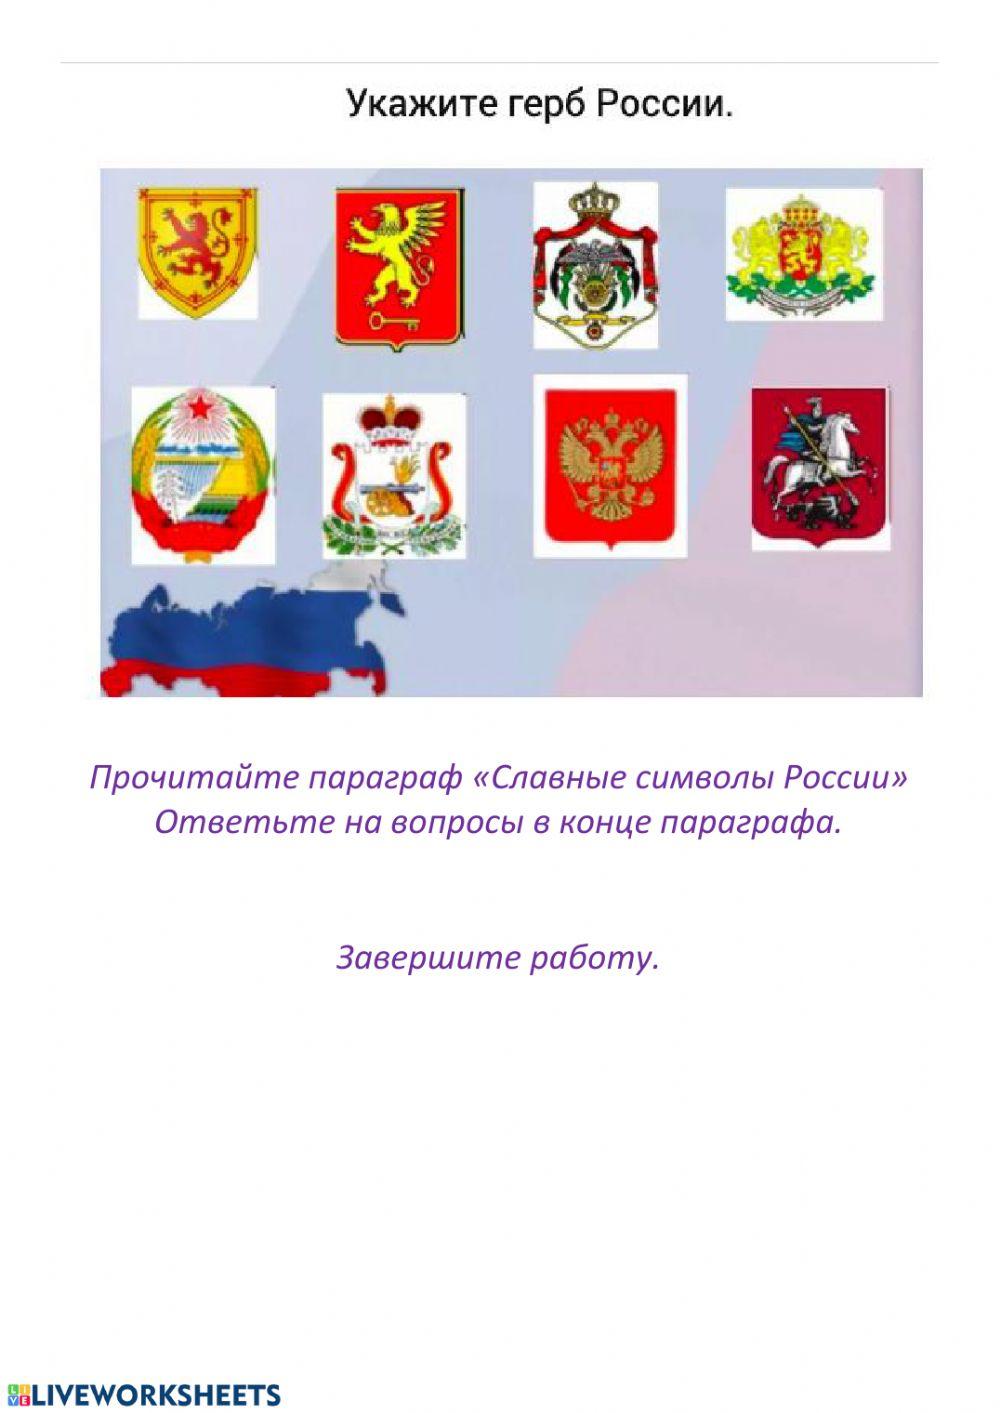 Основные символы Росии